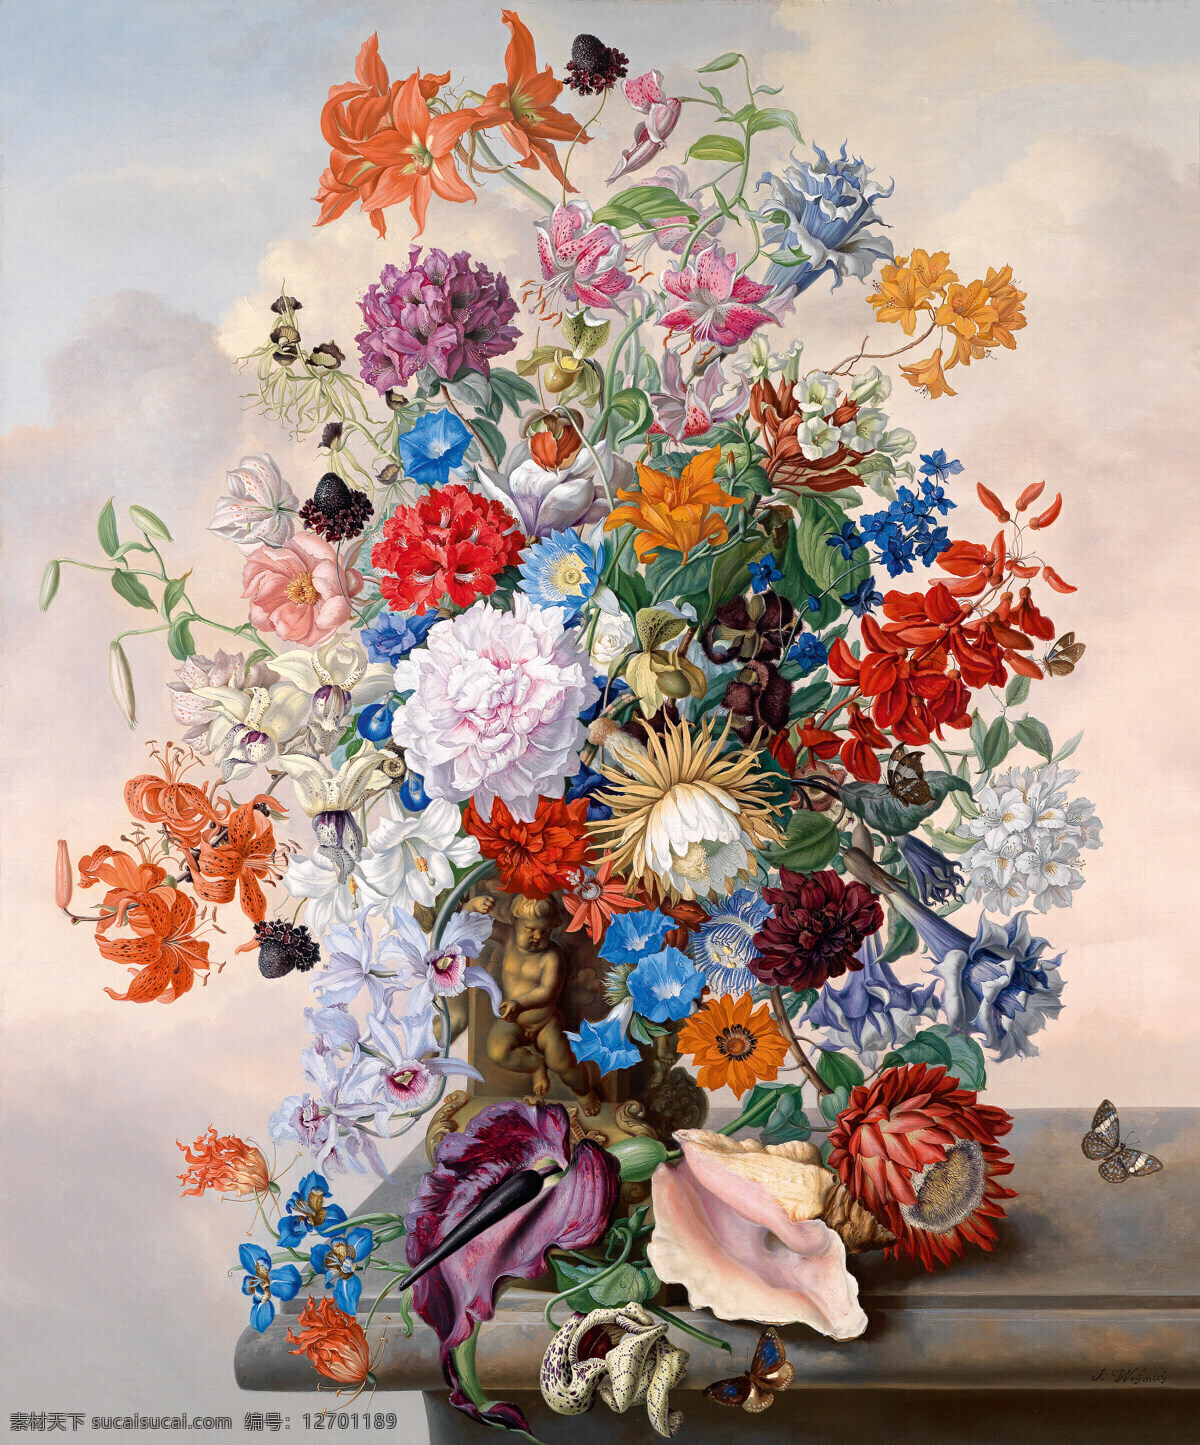 永恒 之美 玻璃花瓶 蝴蝶 绘画书法 文化艺术 油画 永恒之美 静物鲜花 混搭鲜花 19世纪油画 装饰素材